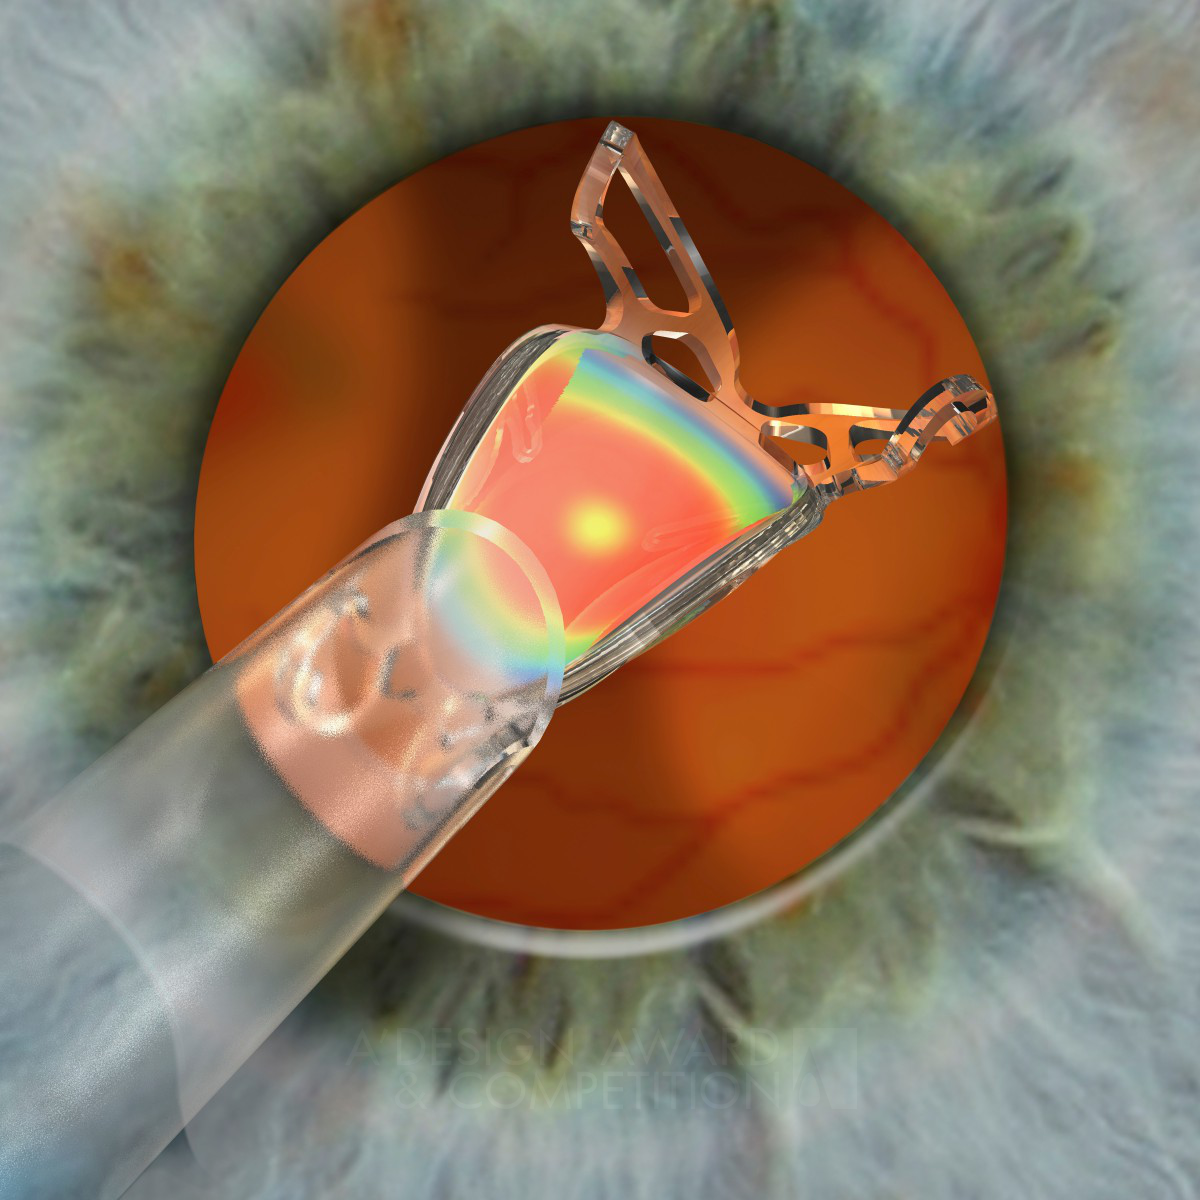 Well Intraocular Lens by Sifi Medtech R&D